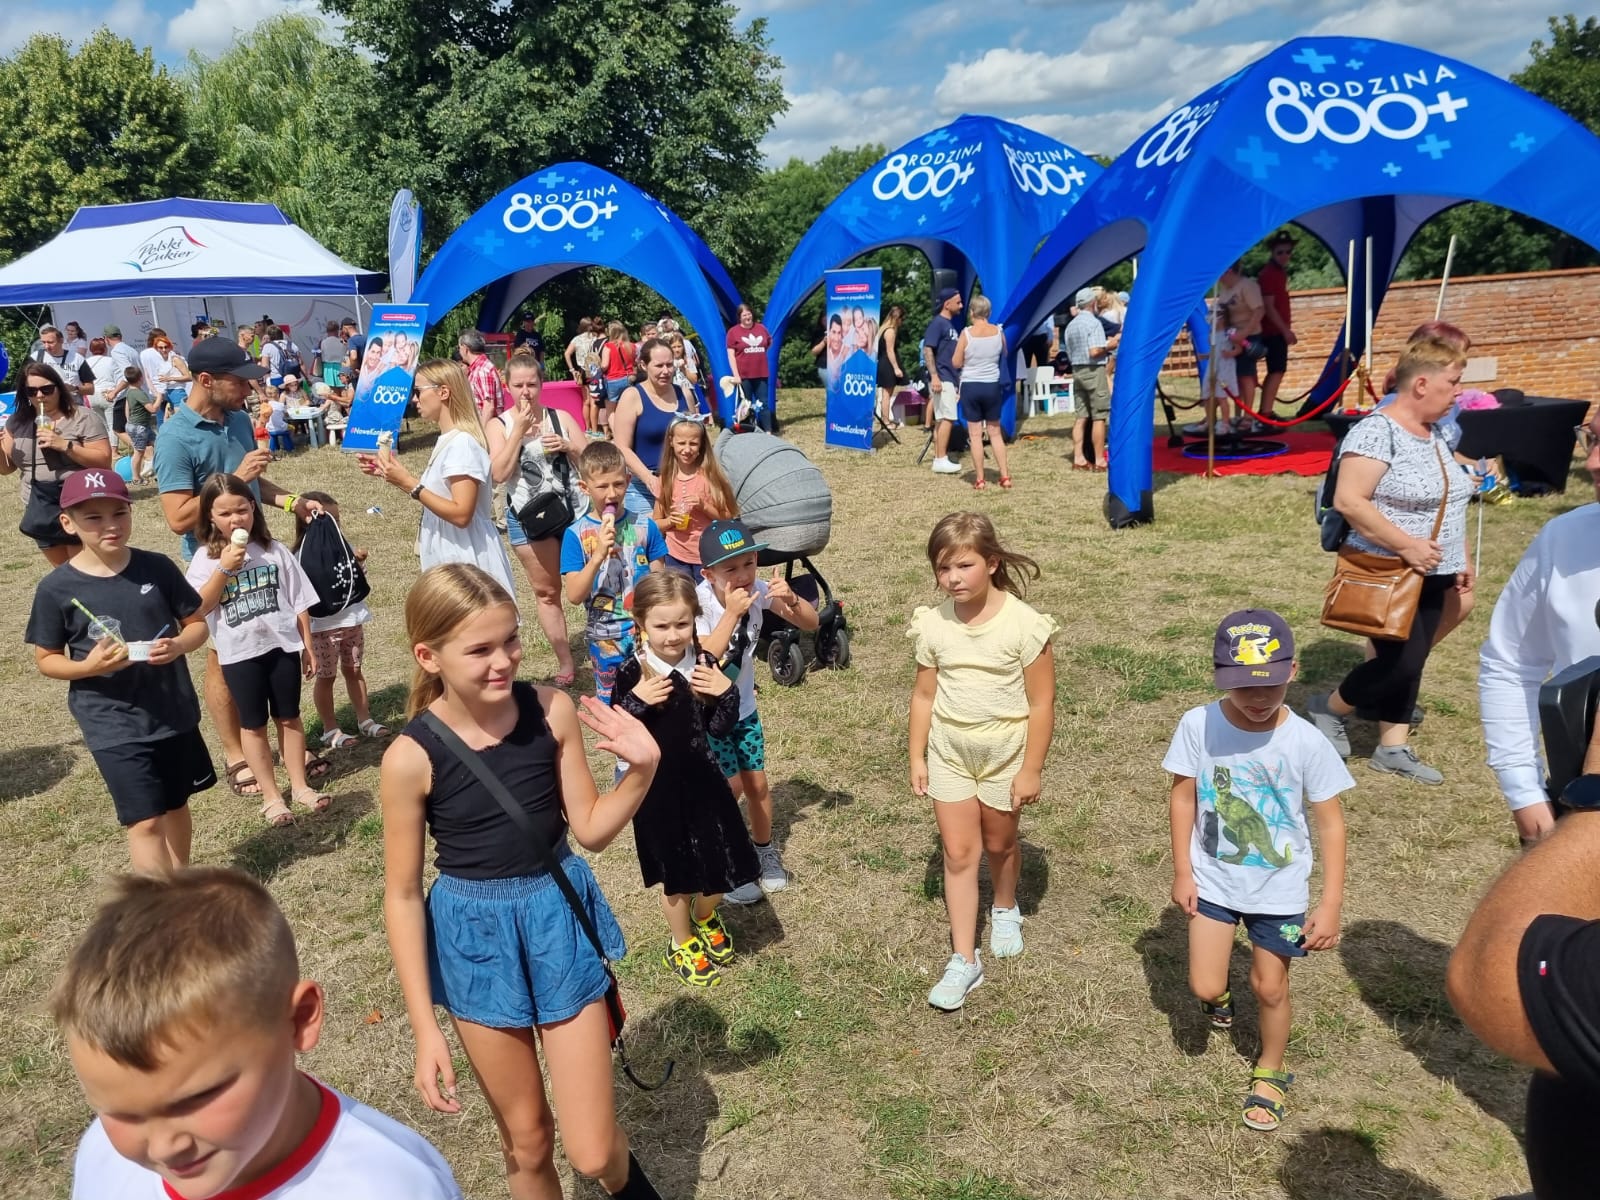 Wielki Piknik Rodzinny 800+ w Olsztynie! Dzień pełen atrakcji dla całej rodziny rodzina Wiadomości